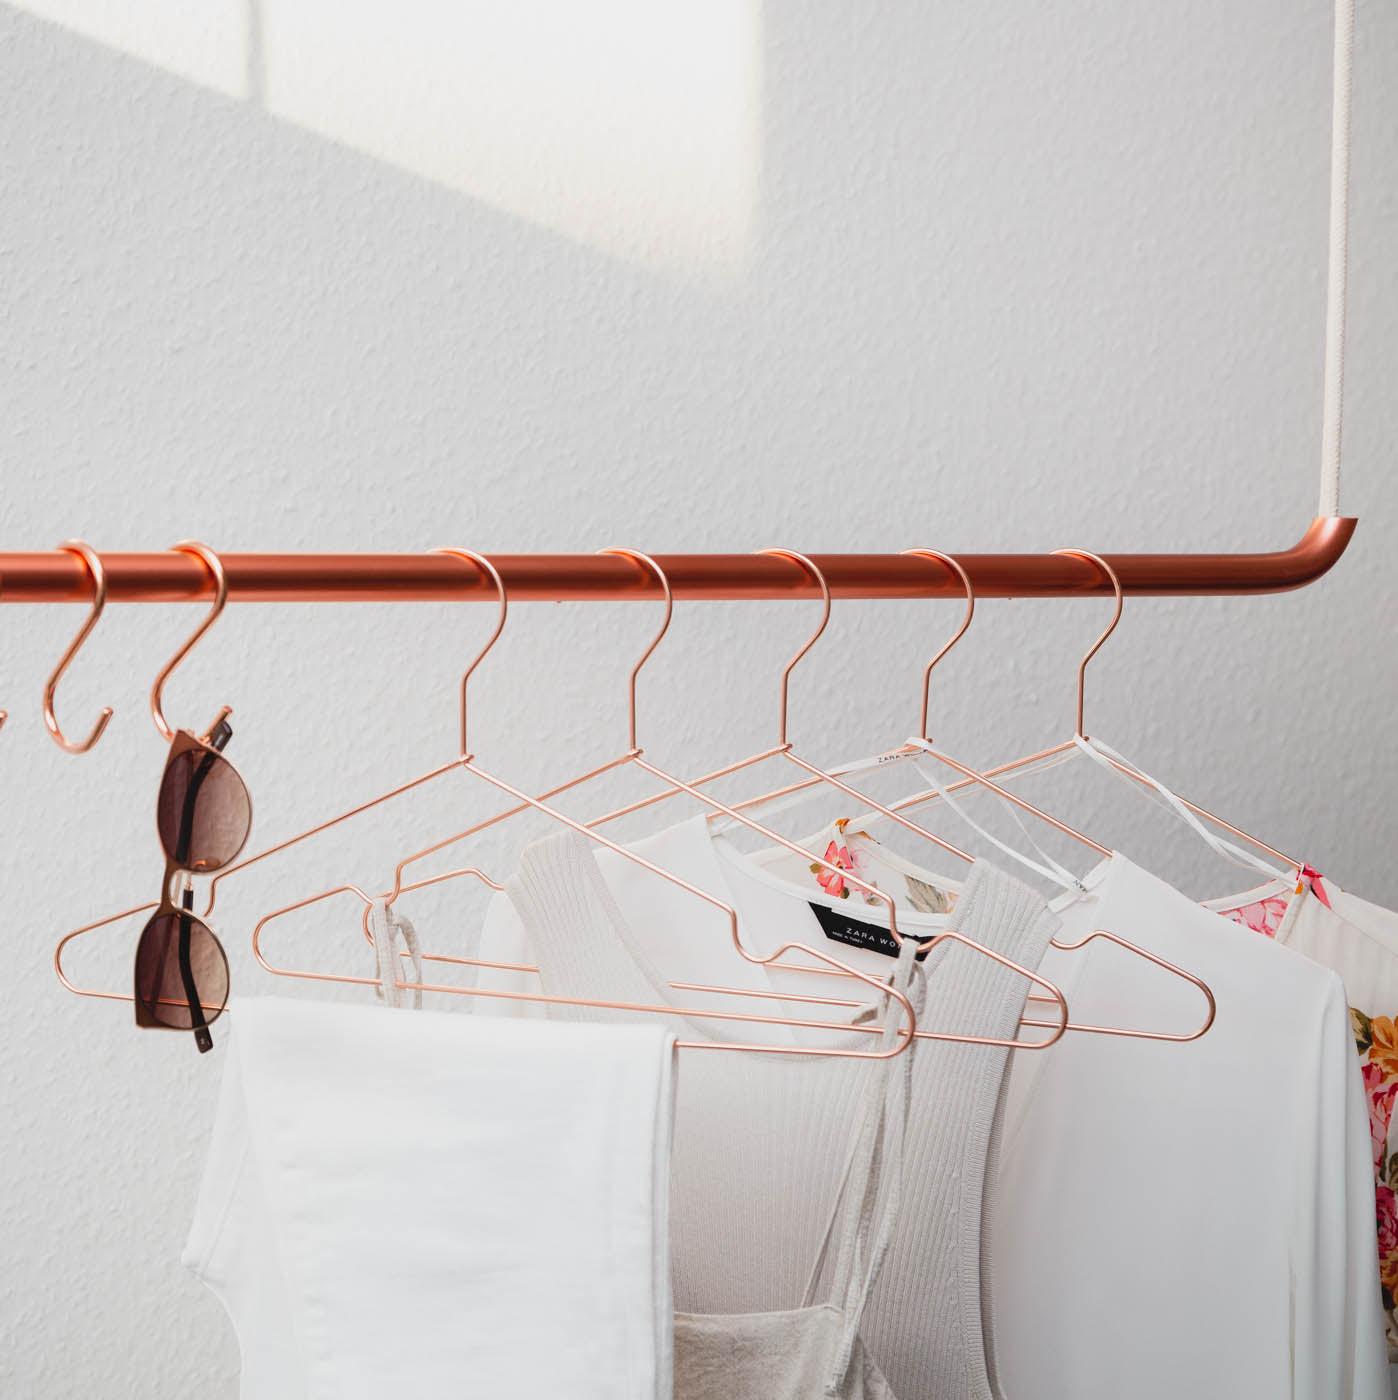 Kupferfarbenden Kleiderbügel hängen leuchtend an Kleiderstange von der Decke